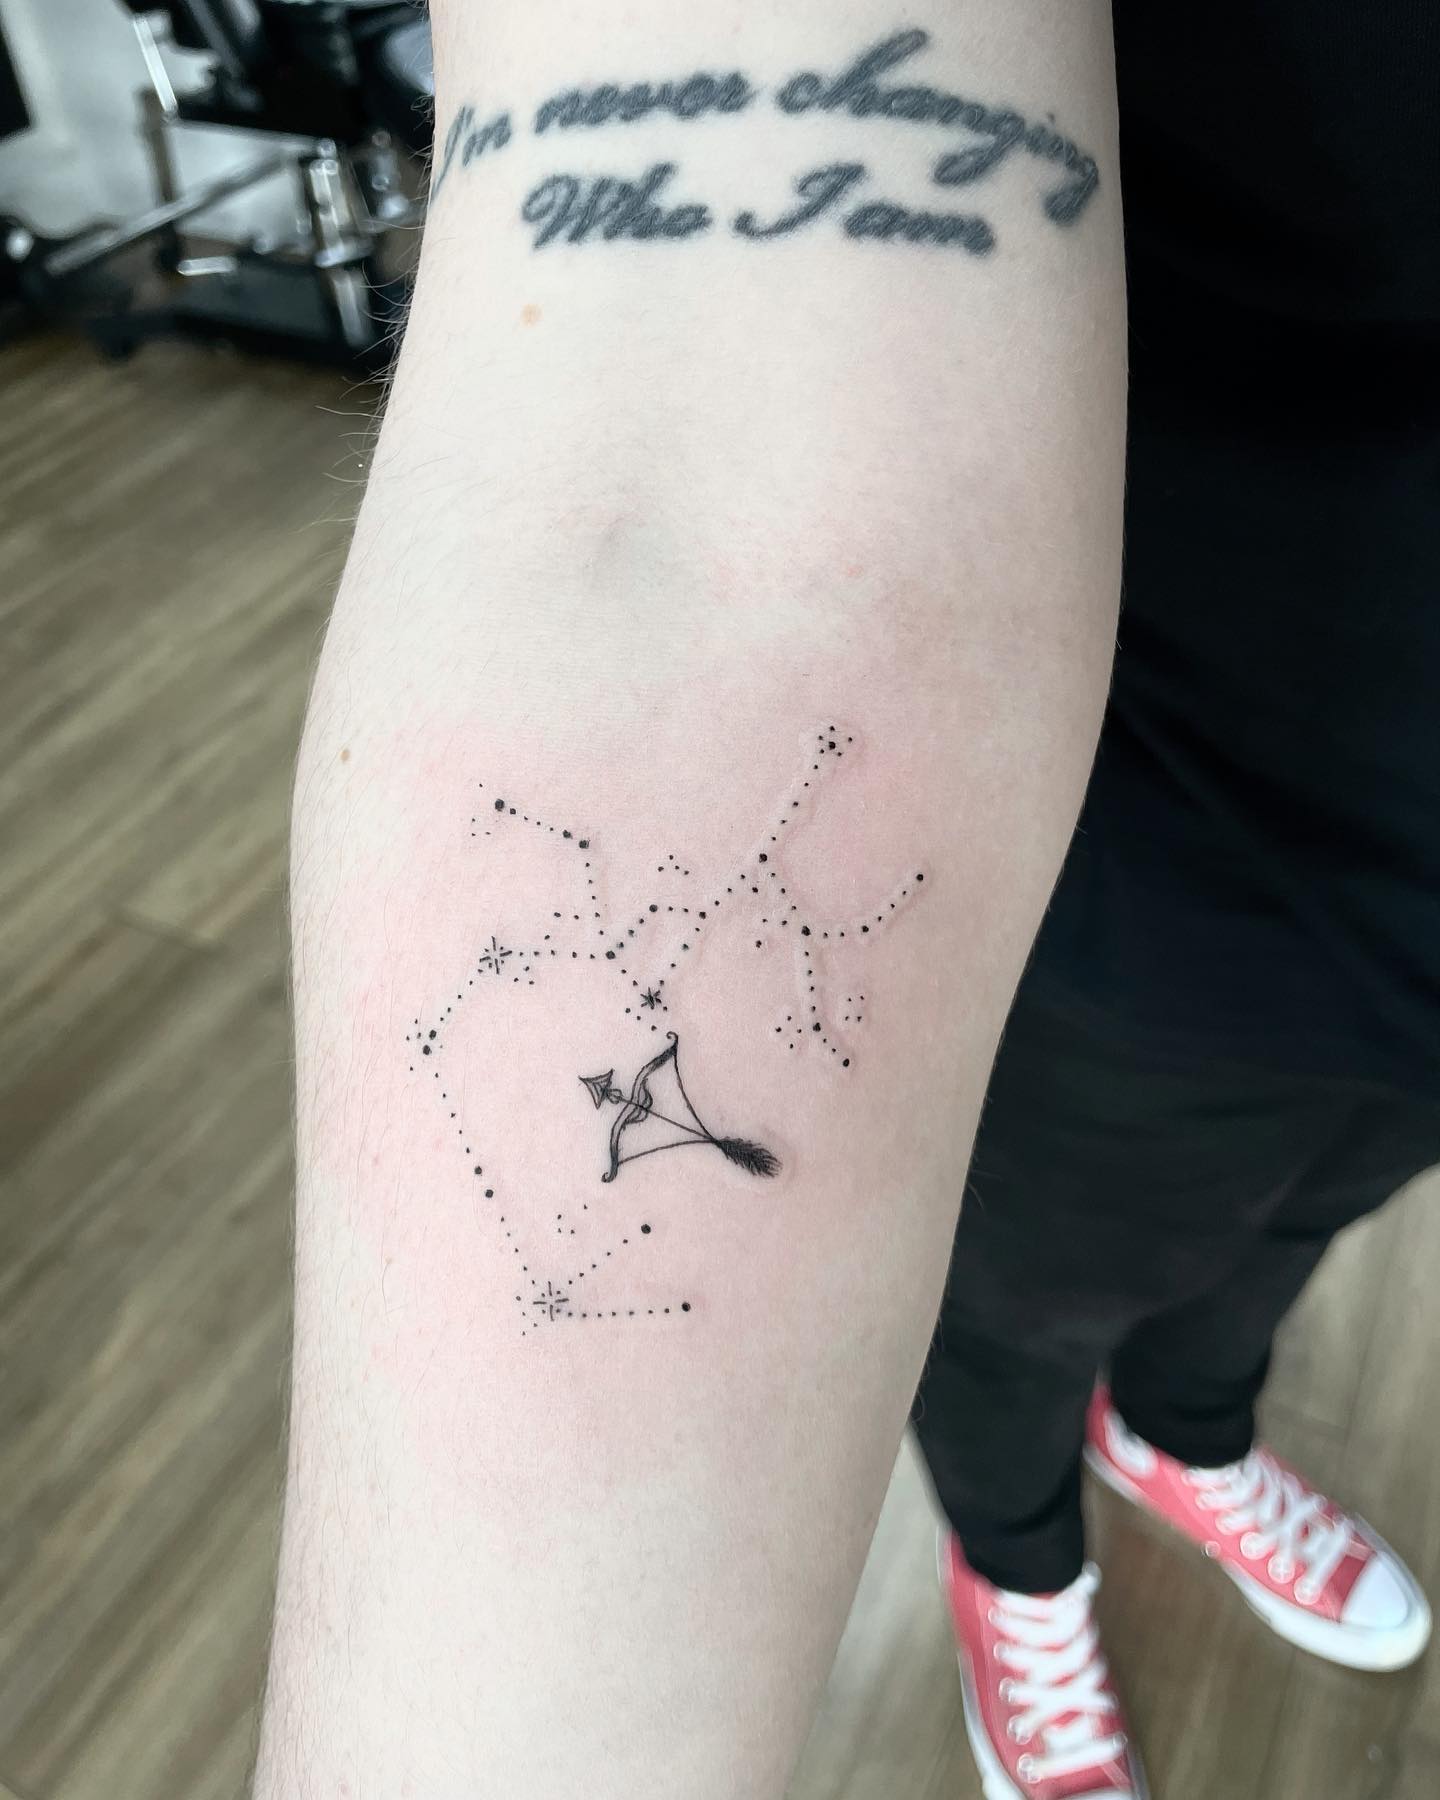 Tatuaje de estrella en la constelación de Sagitario.